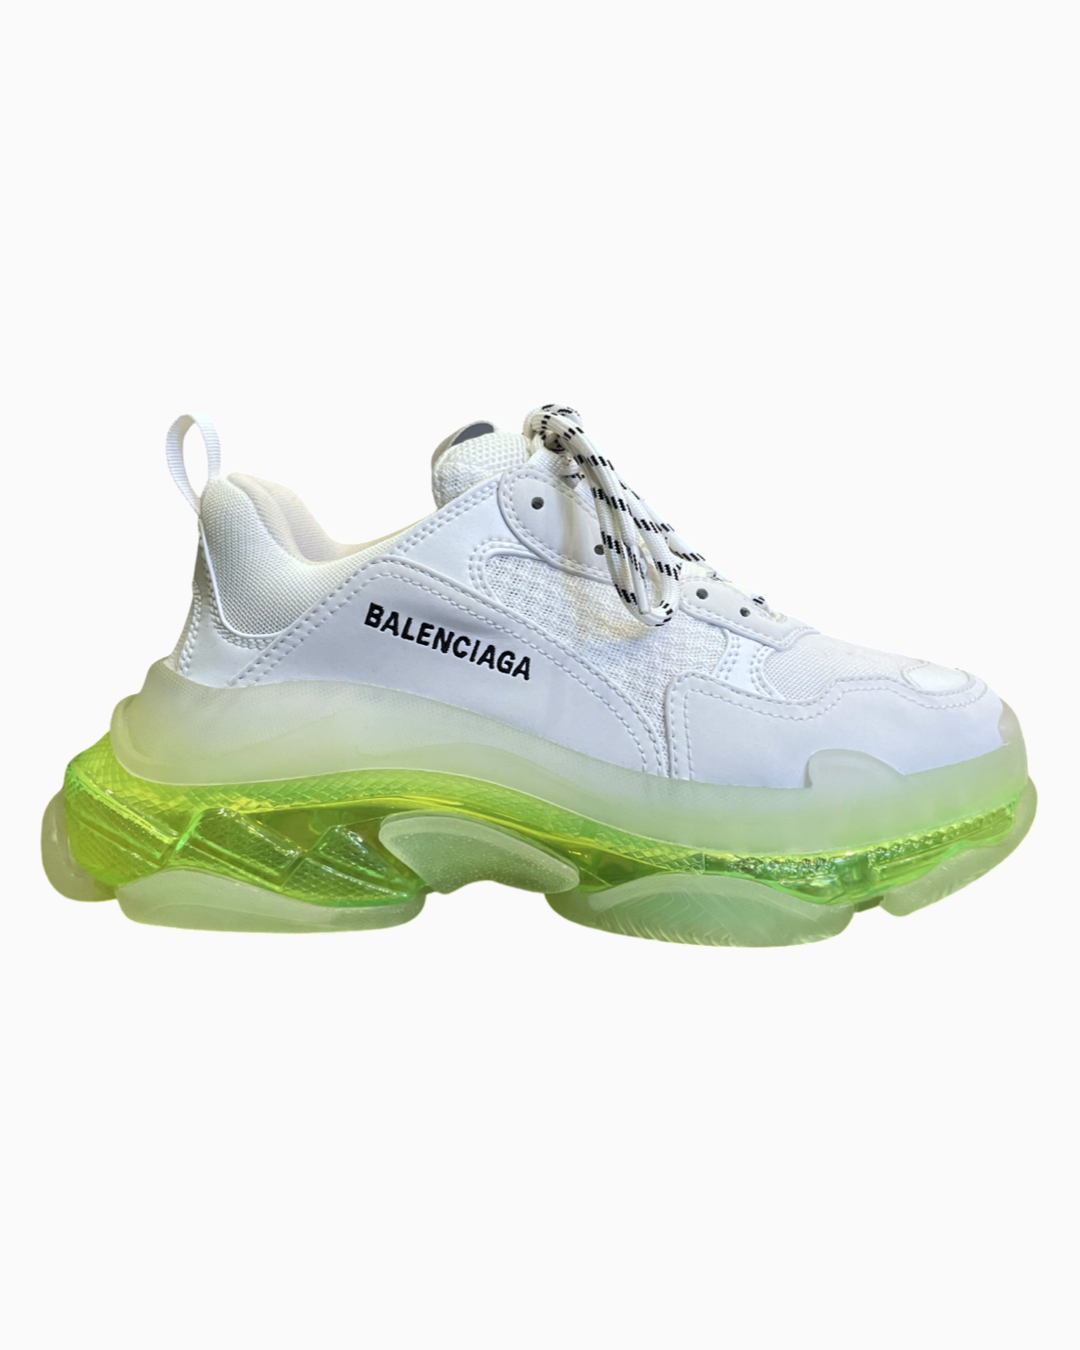 Balenciaga Triple S Sneaker Clear Sole Neon Yellow – FUTURO